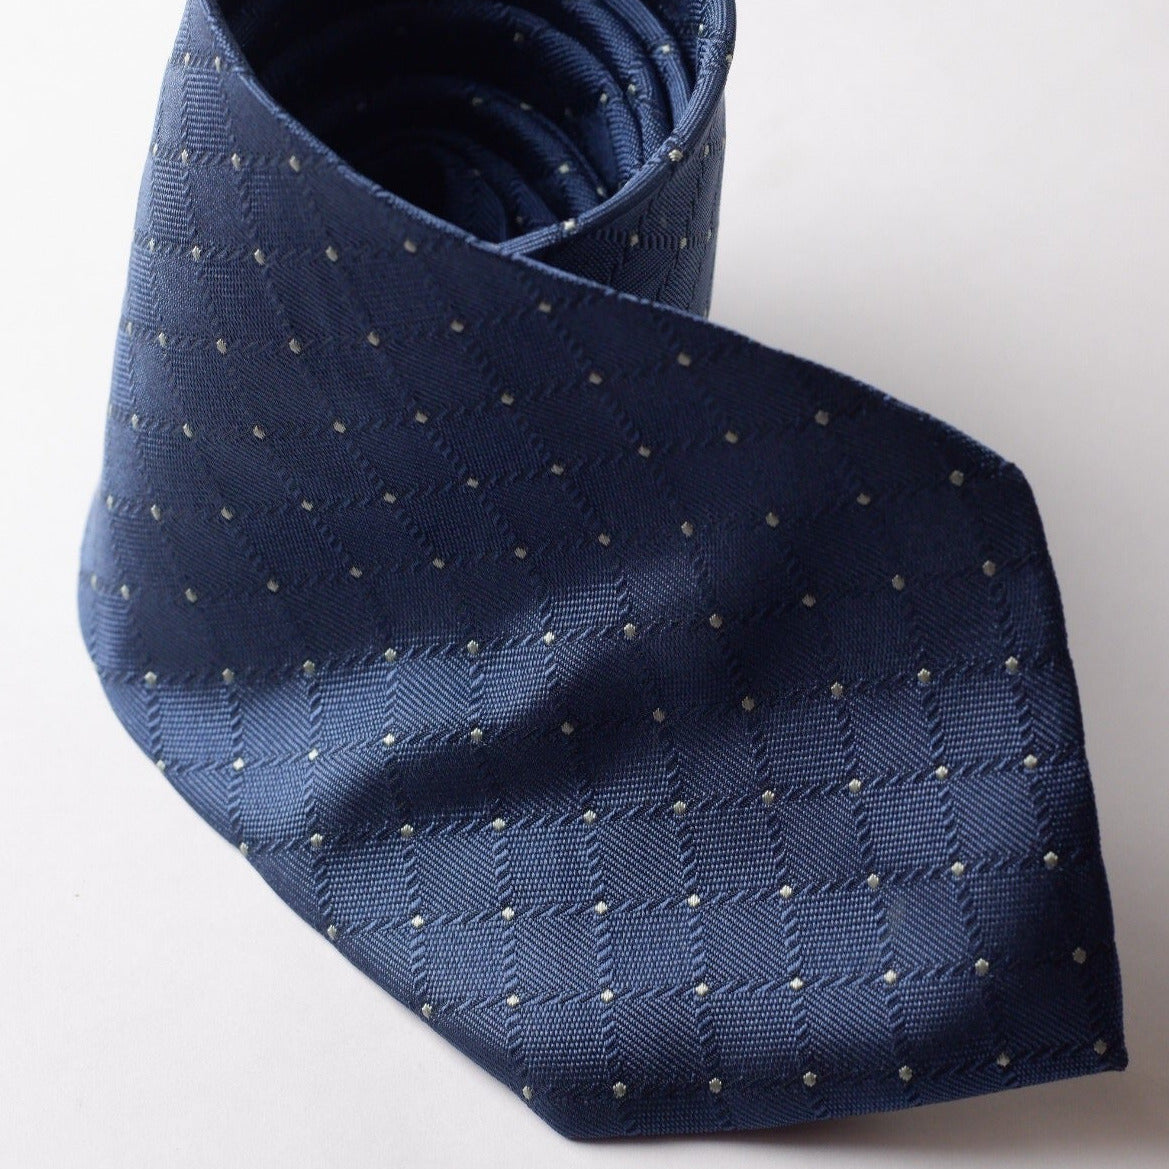 Zanolini Blue Checked Textured Necktie